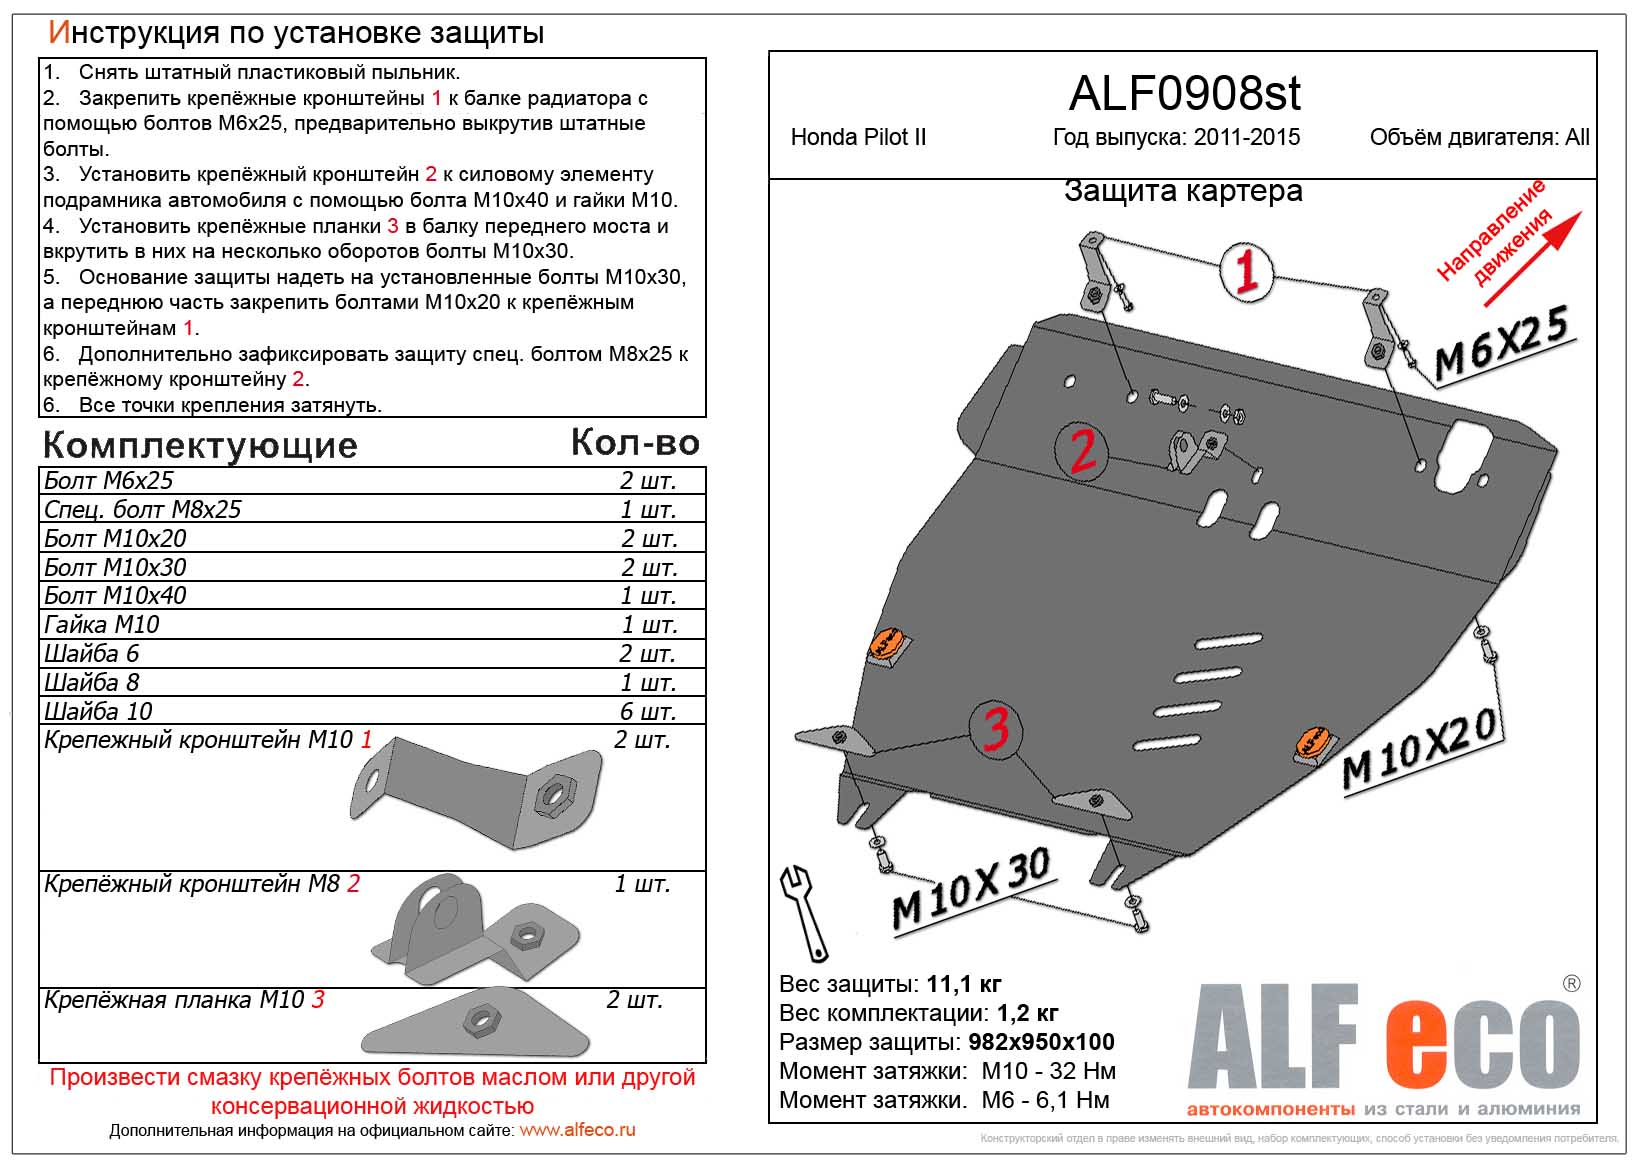 Защита  картера и кпп для Honda  Pilot I update 2011-2015  V-all , ALFeco, алюминий 4мм, арт. ALF0908al